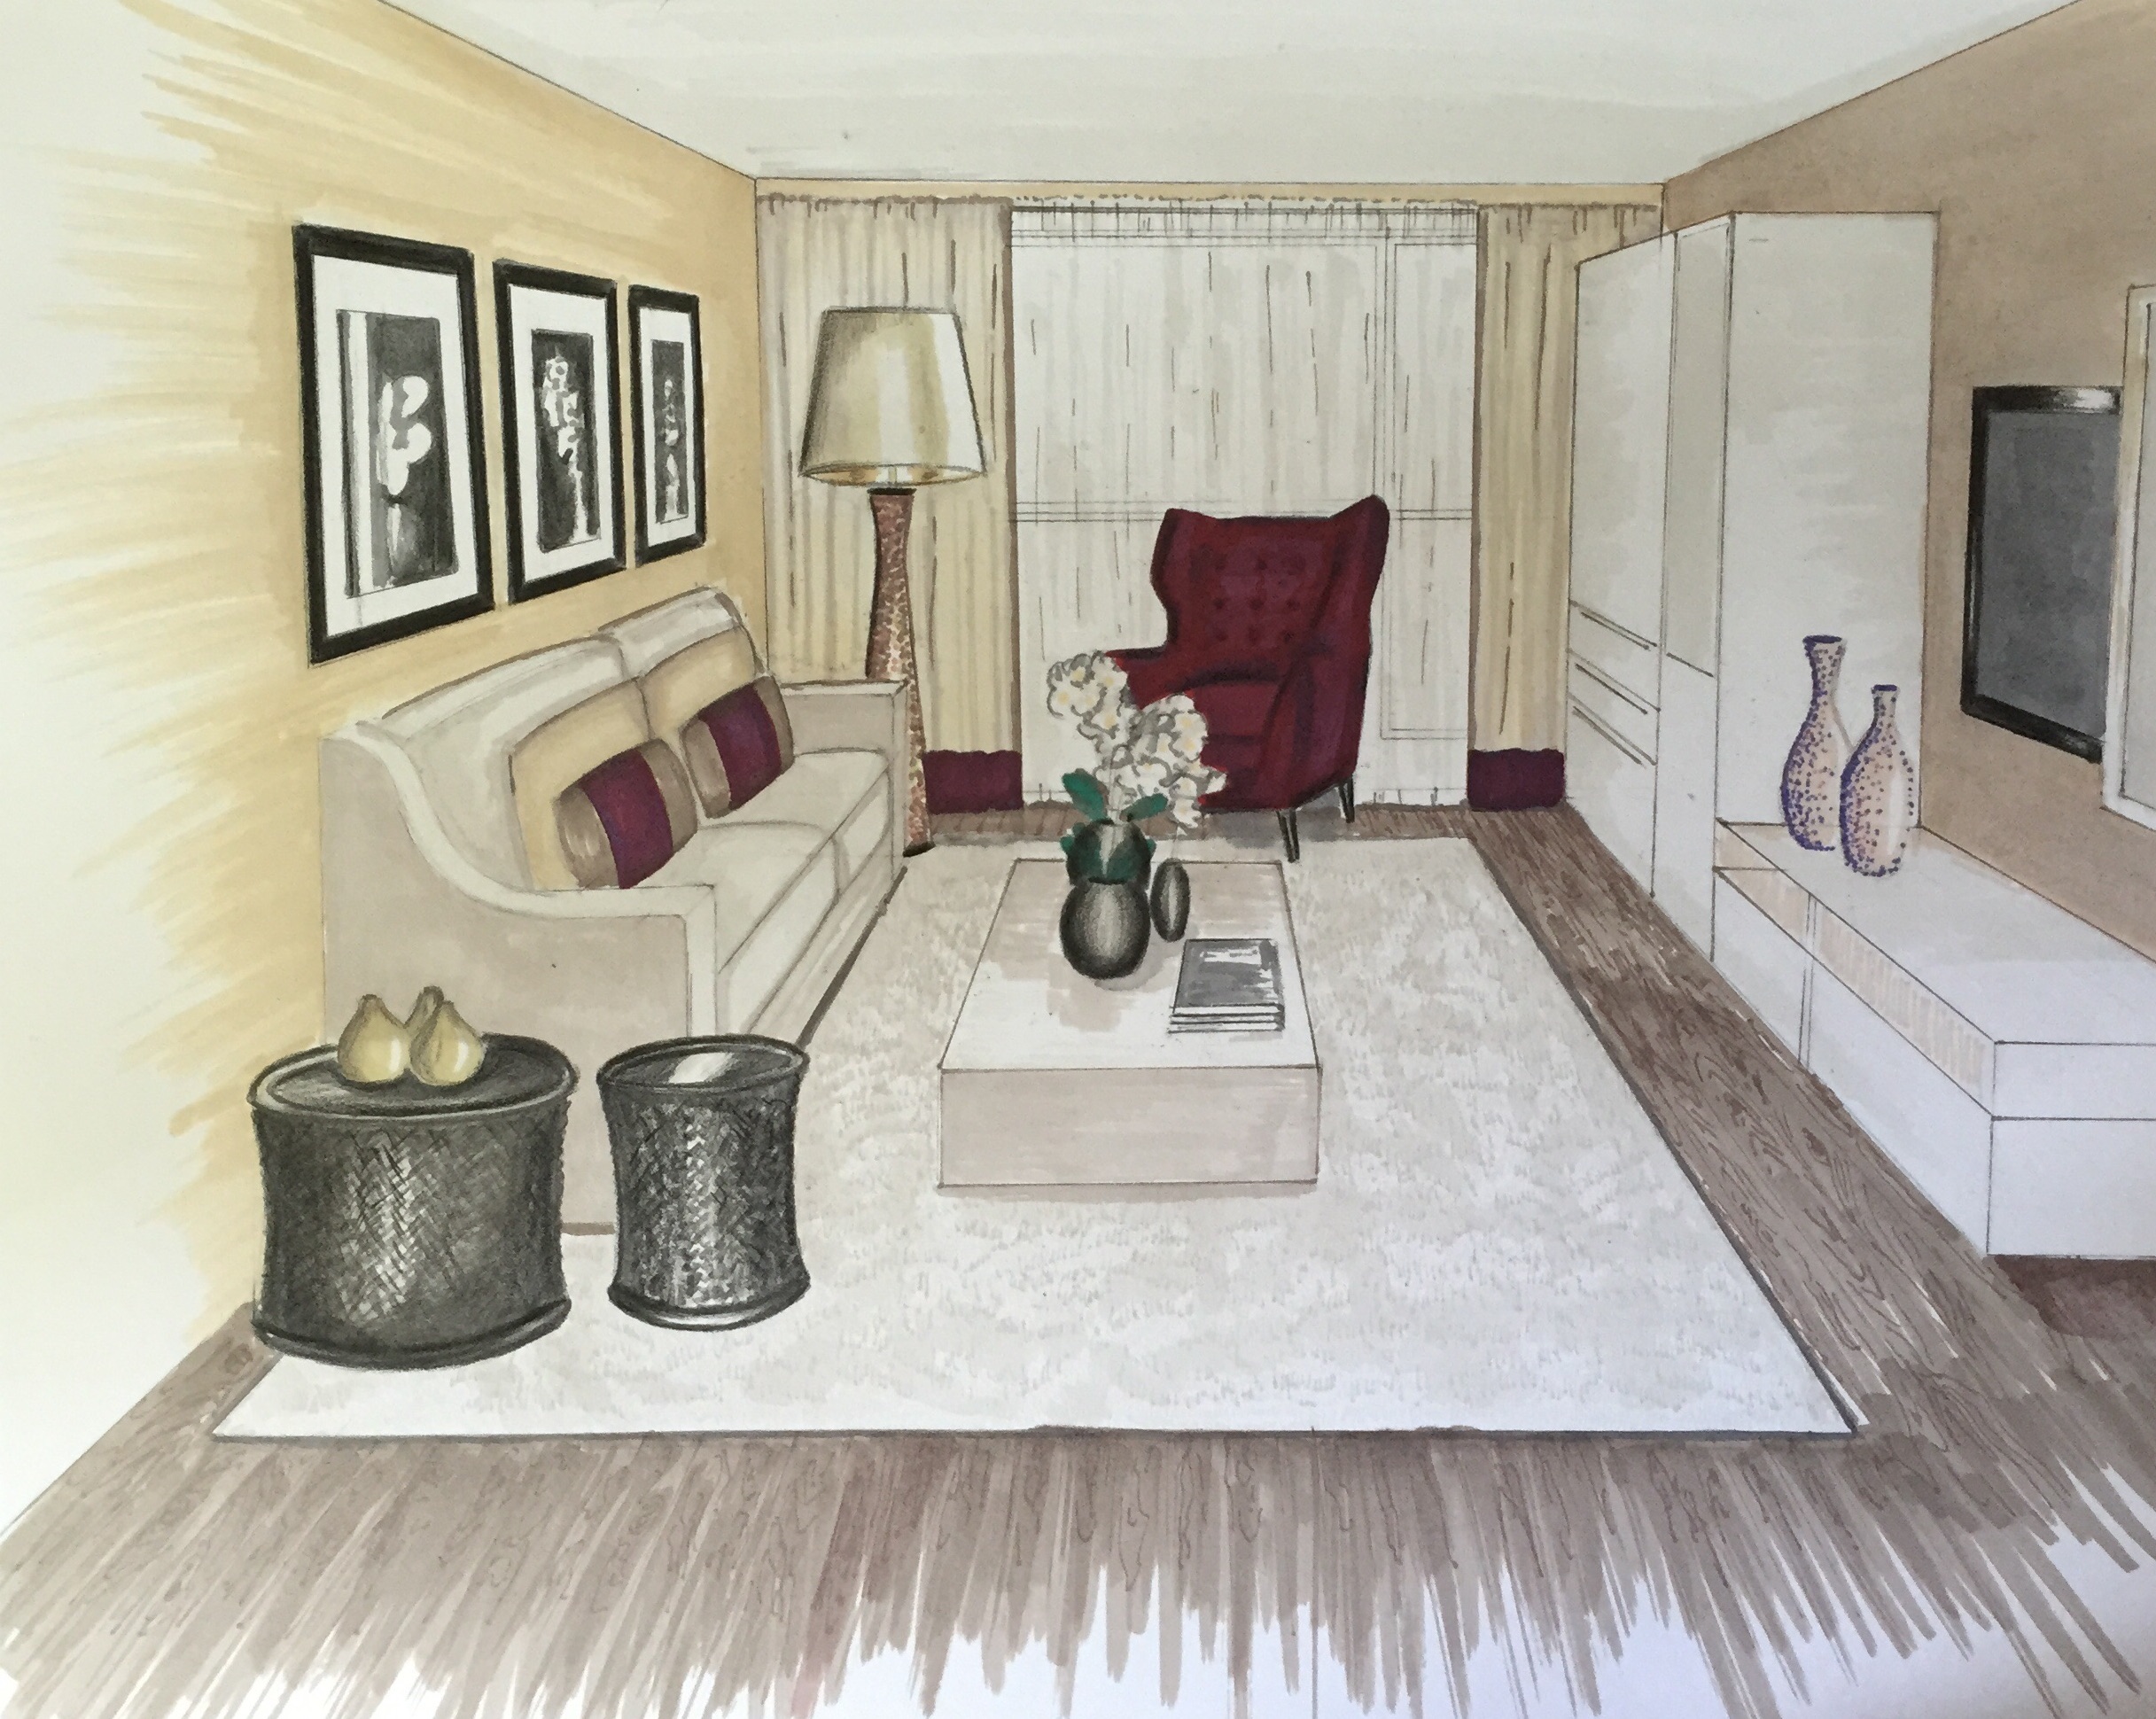 Apartment Renovation Project: Concept & Decorative Scheme